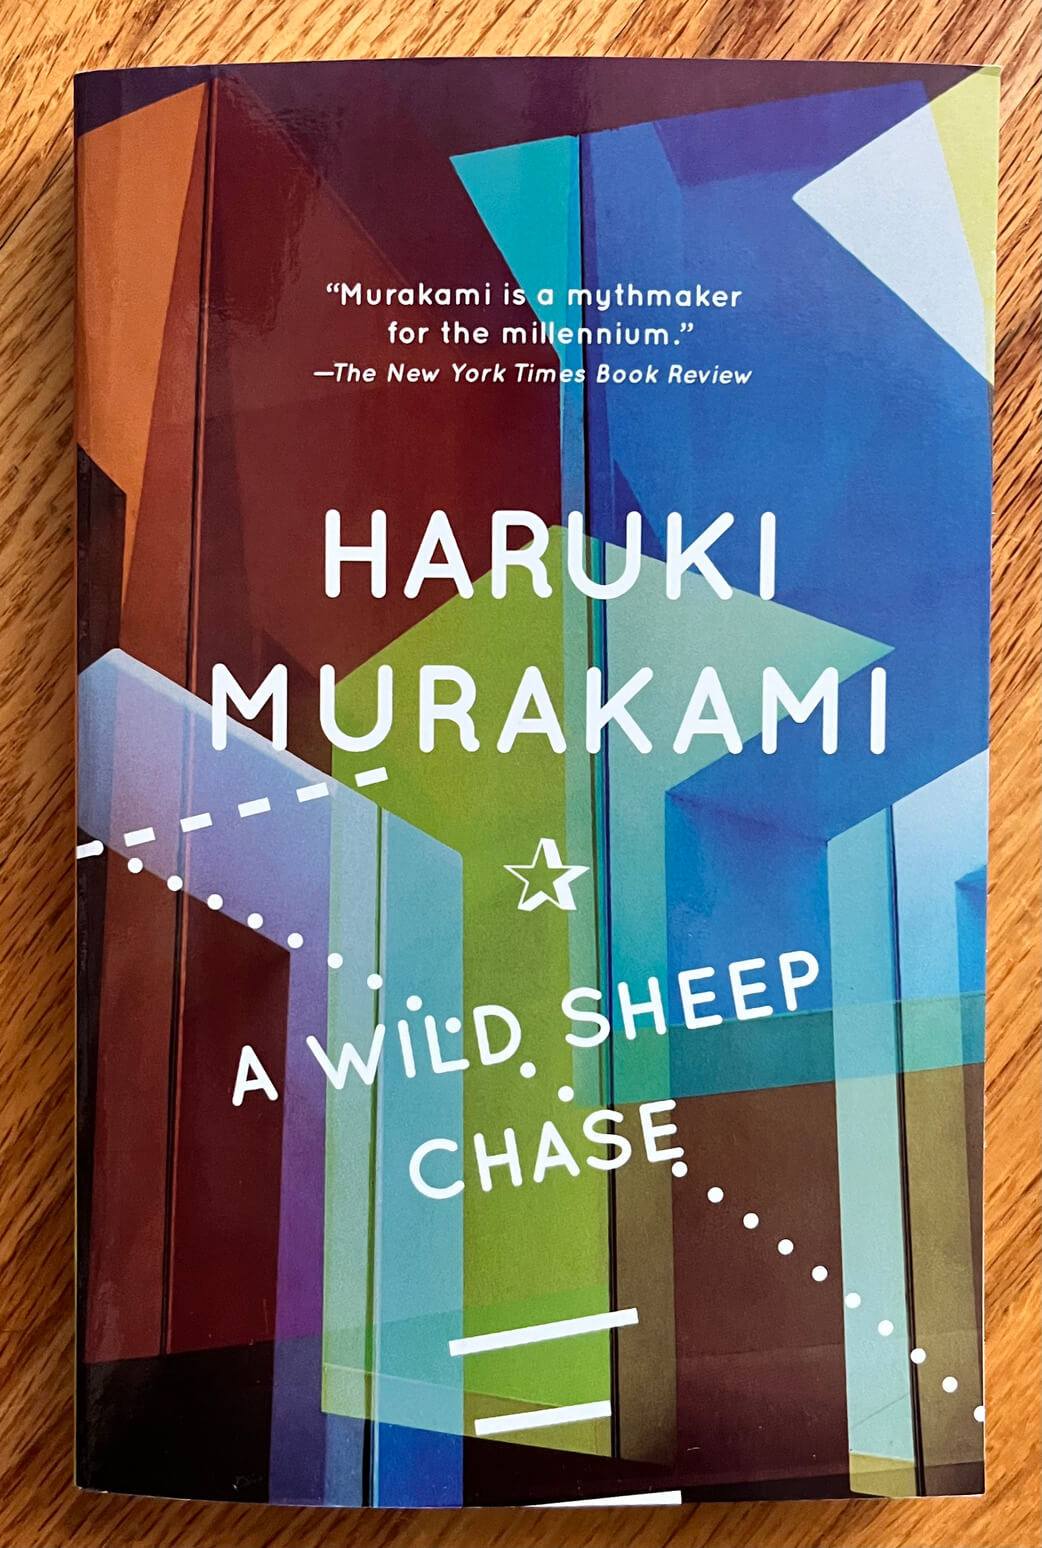 “A Wild Sheep Chase” by Haruki Murakami